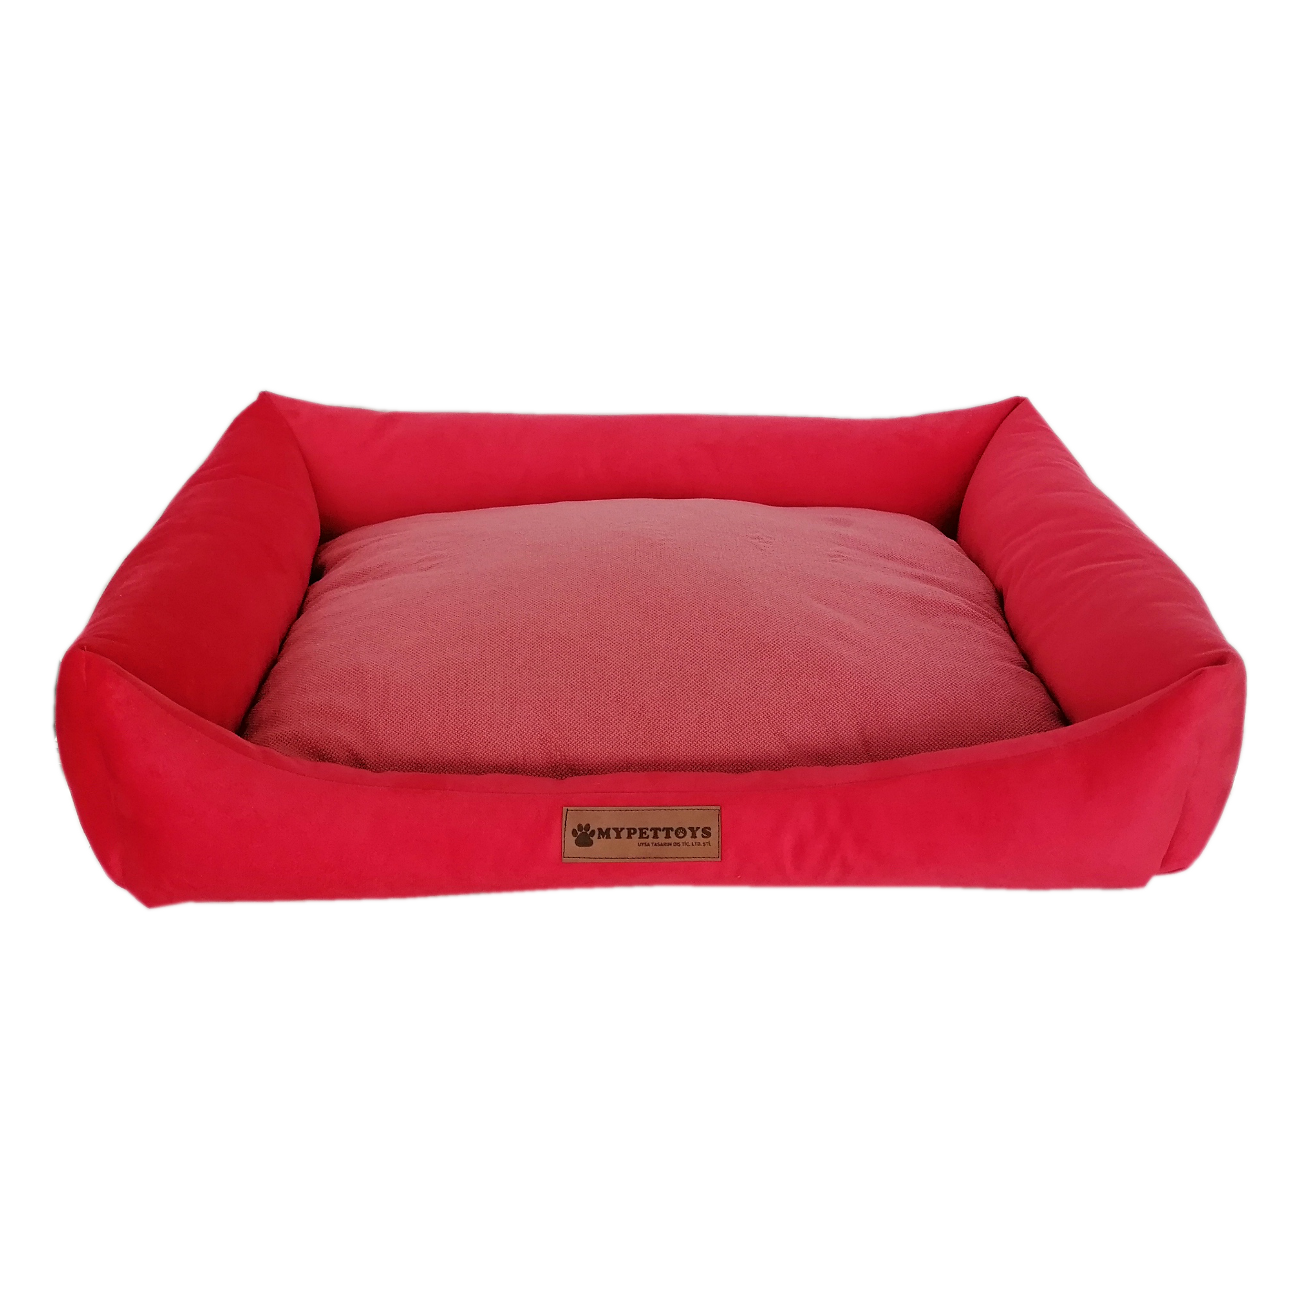 Tay Tüyü Yumuşak Köpek Yatağı Medium Kırmızı 50*60 cm